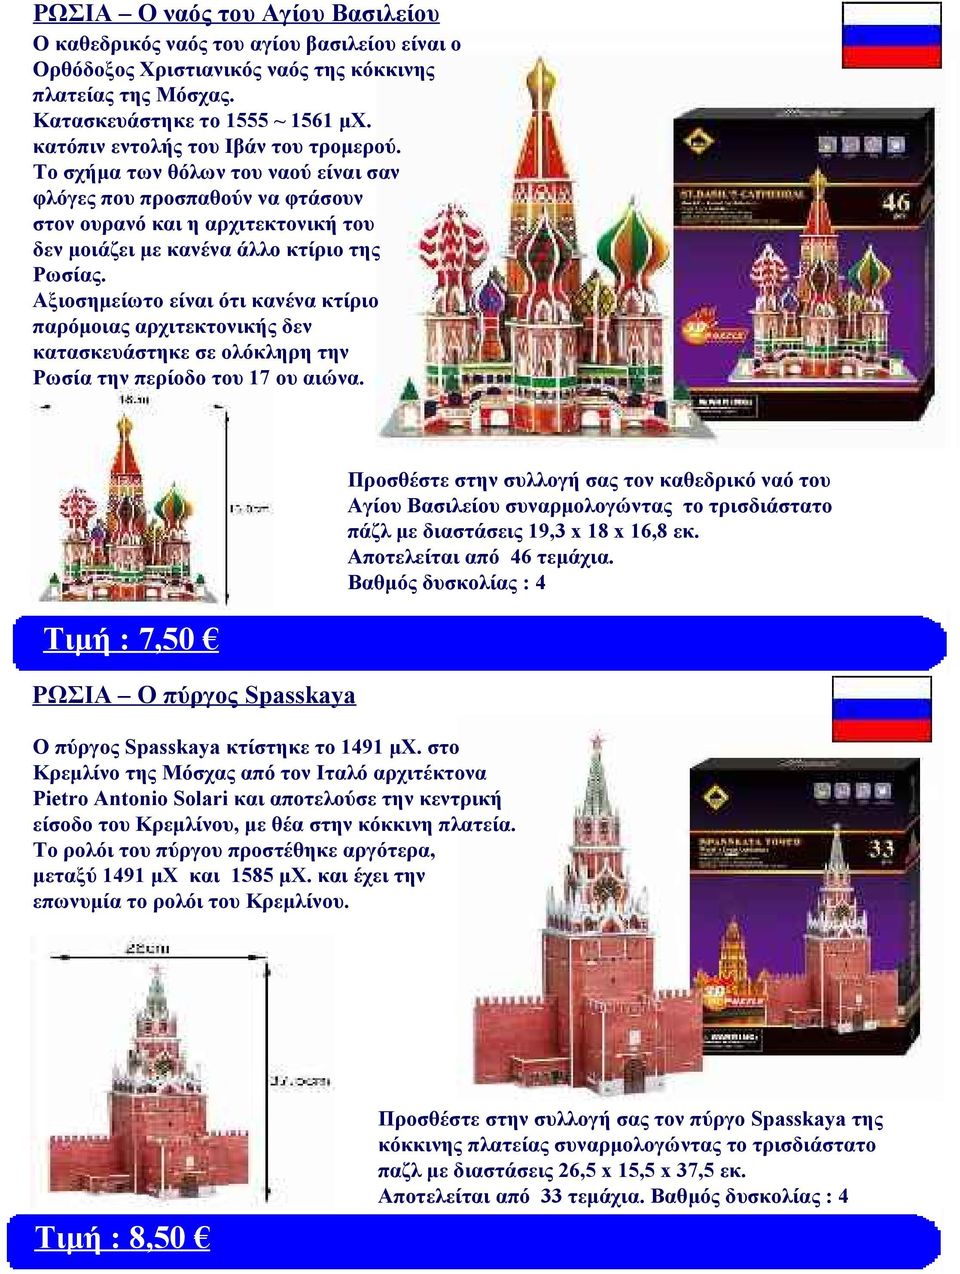 Αξιοσημείωτο είναι ότι κανένα κτίριο παρόμοιας αρχιτεκτονικής δεν κατασκευάστηκε σε ολόκληρη την Ρωσία την περίοδο του 17 ου αιώνα.